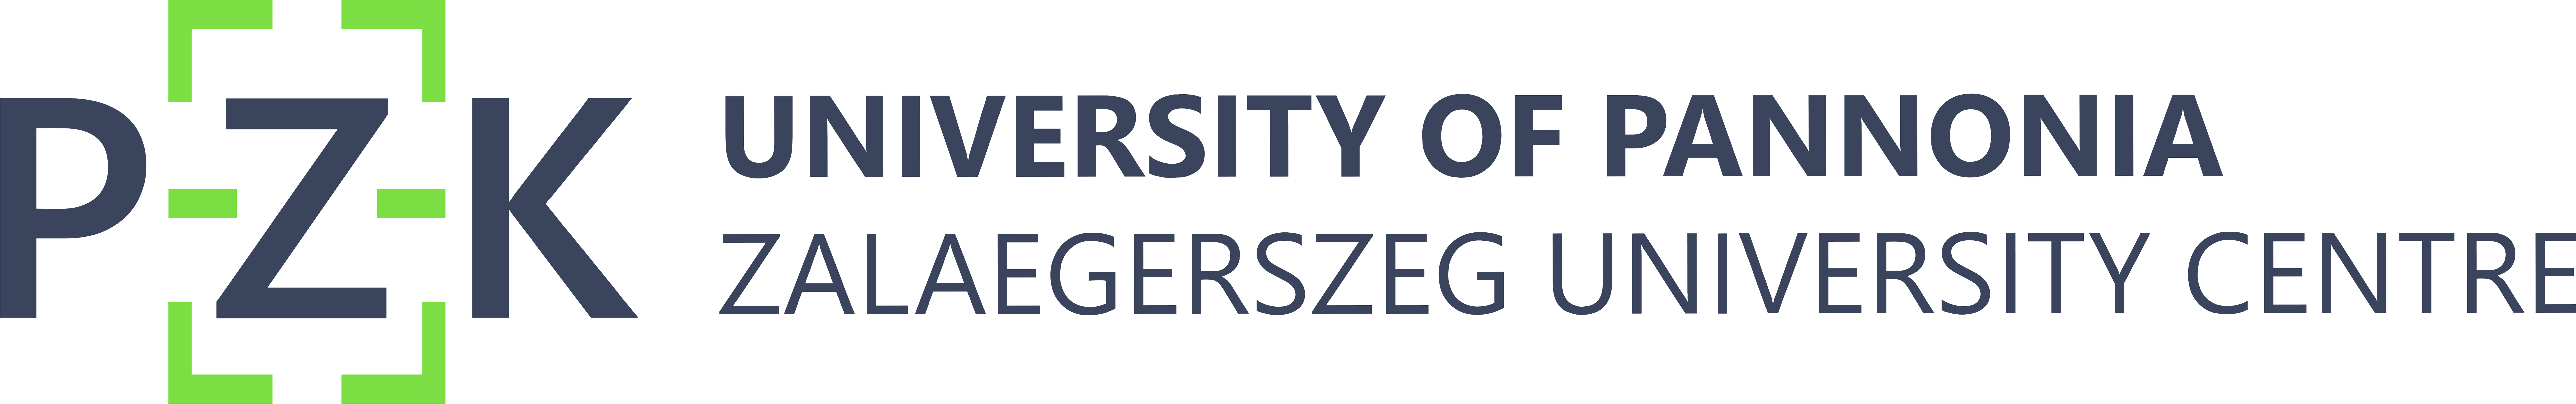 University of Pannonia - Zalaegerszeg University Centre